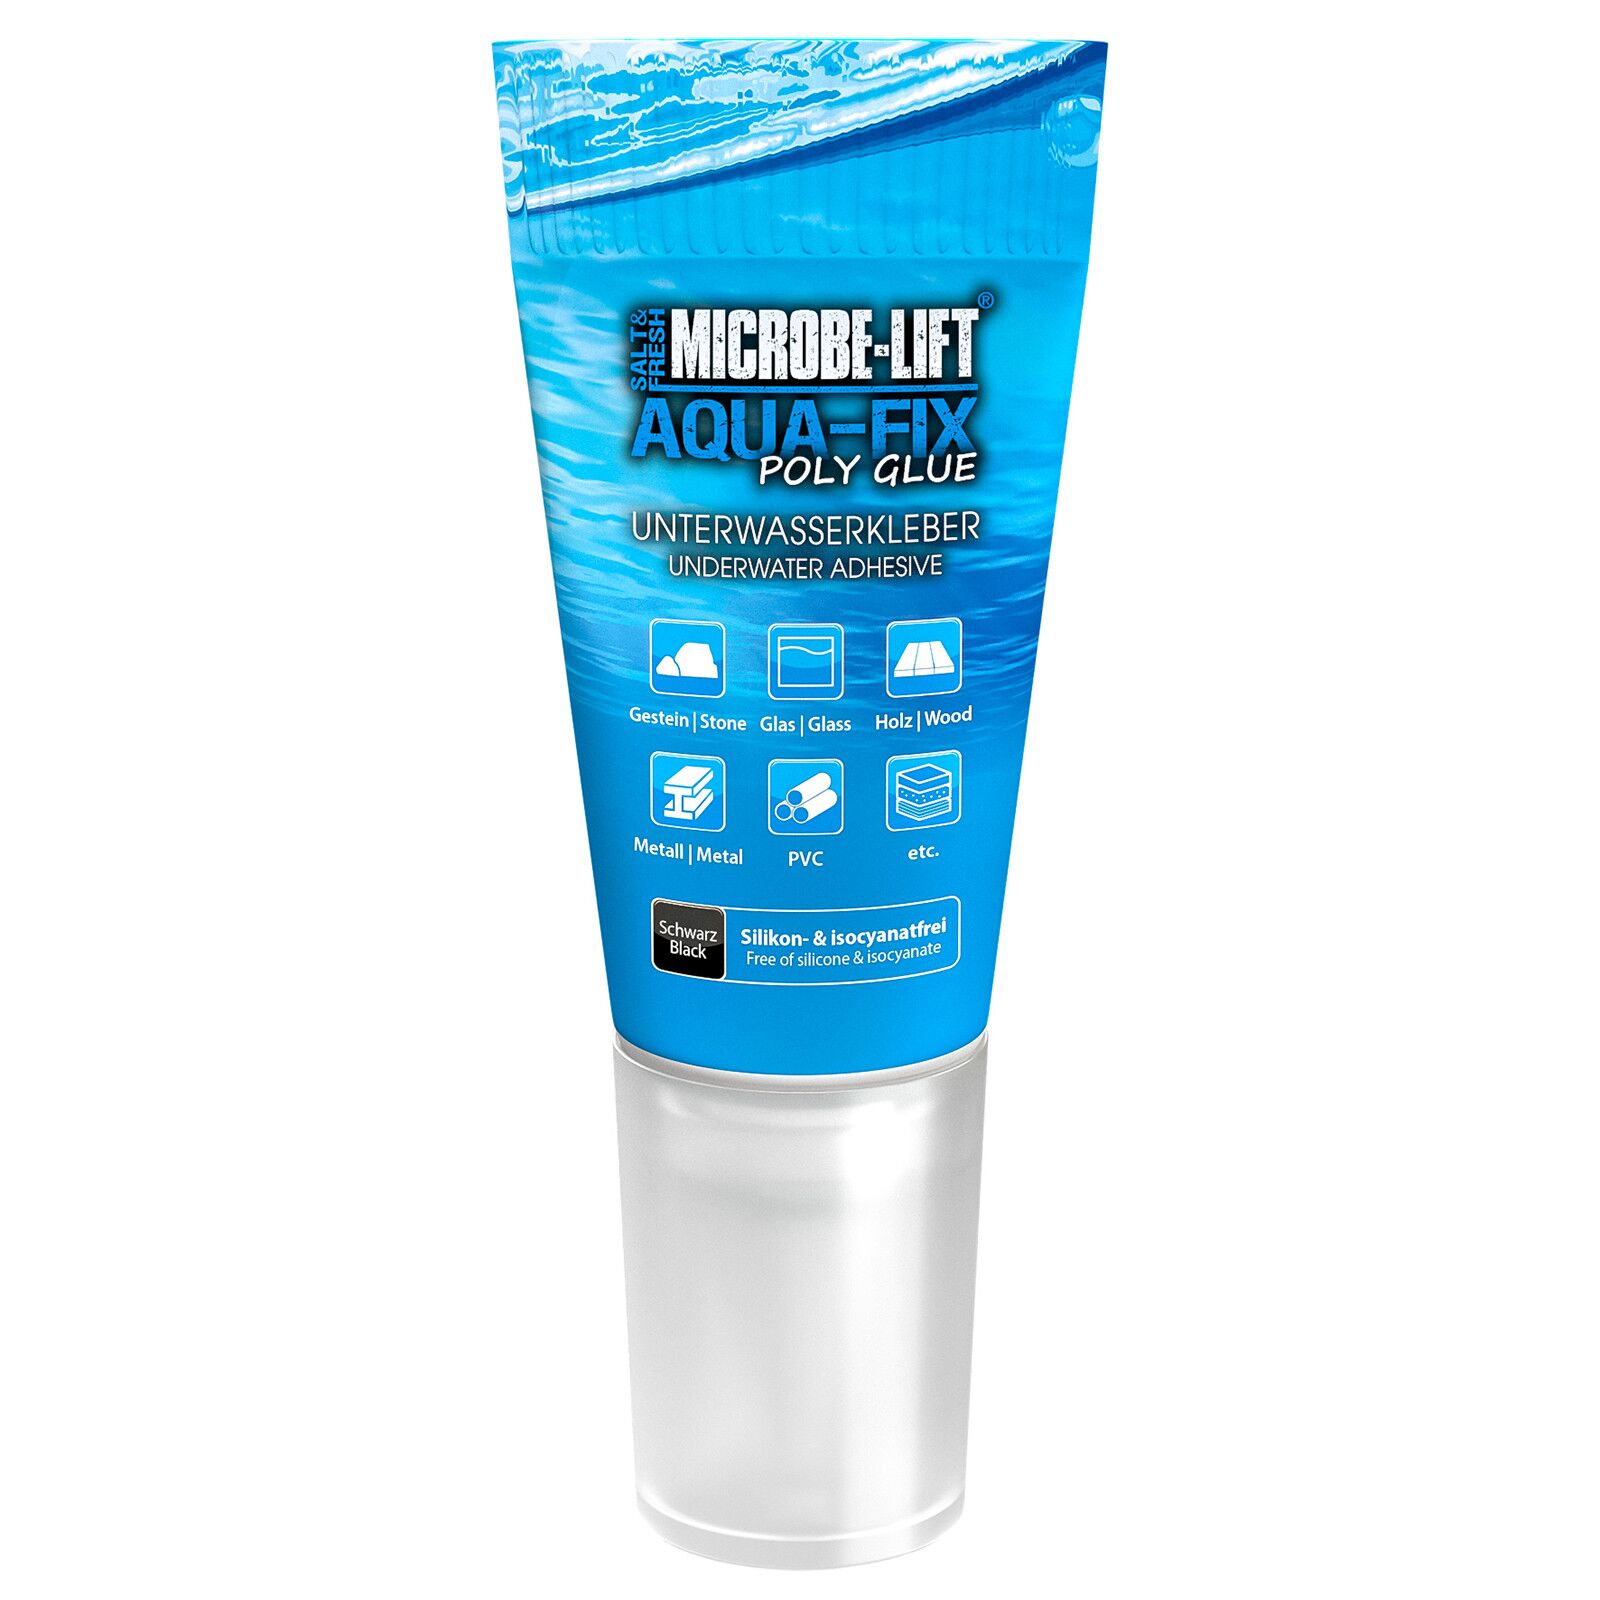 Microbe-Lift - Aqua-Fix Poly Glue - Underwater Adhesive | Aquasabi - Aquascaping Shop